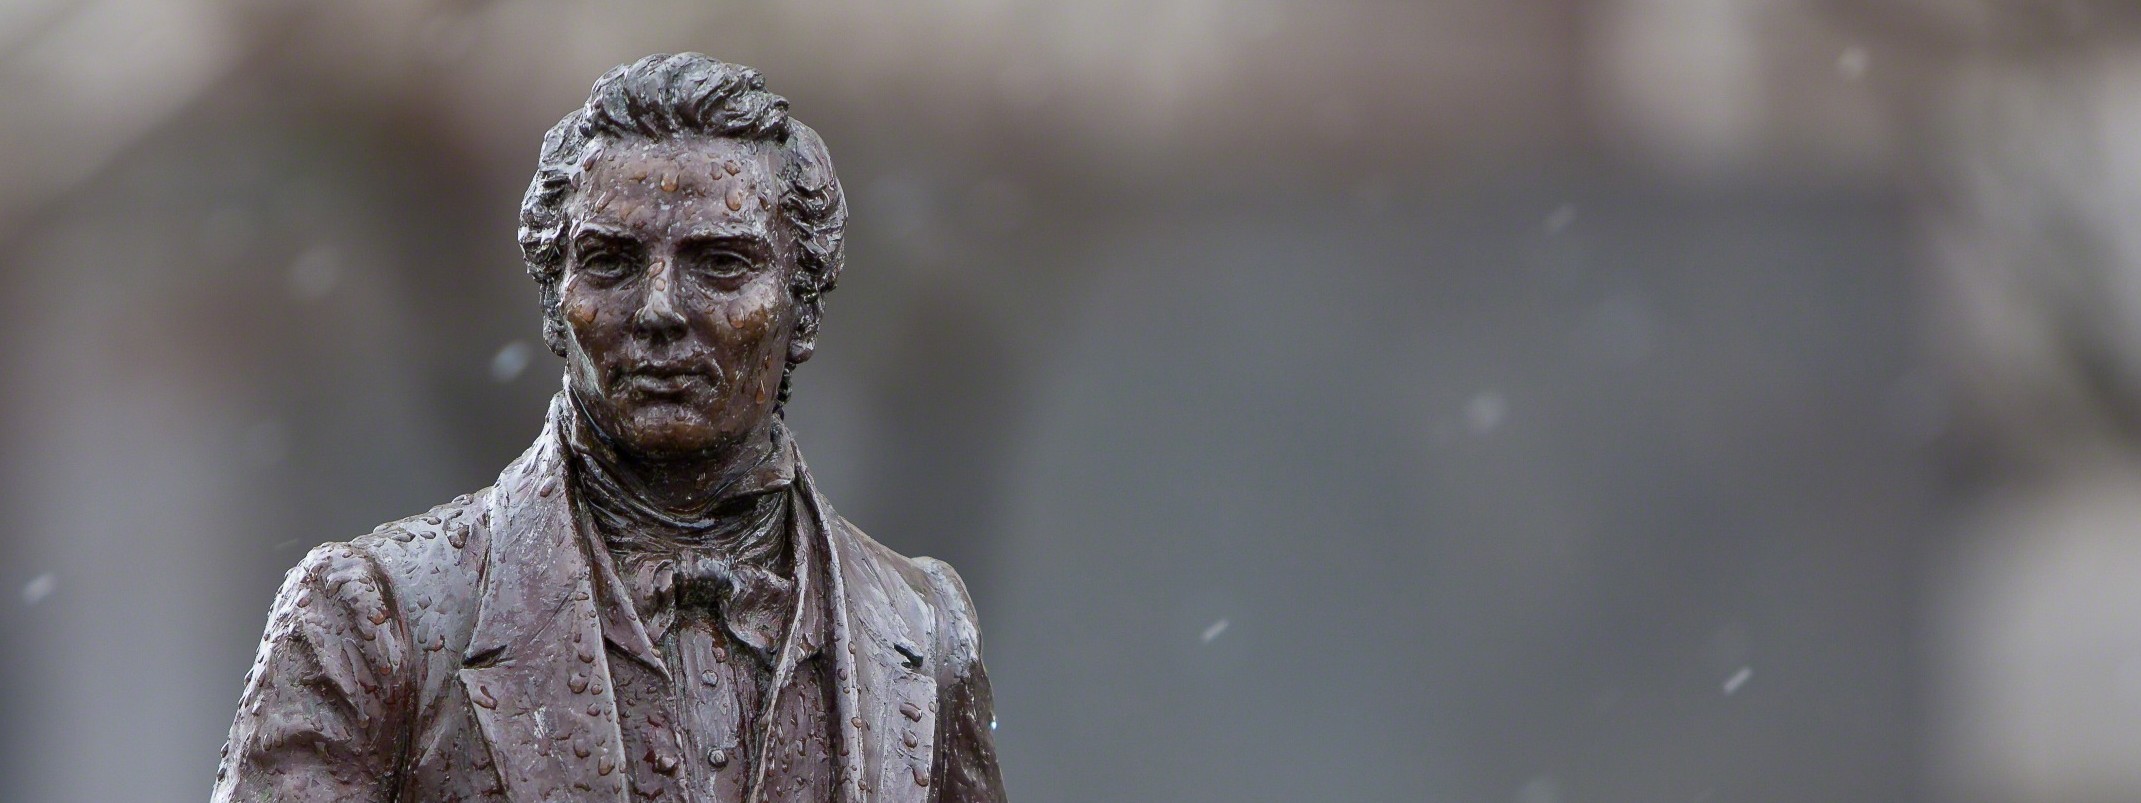 A statue of Joseph Smith